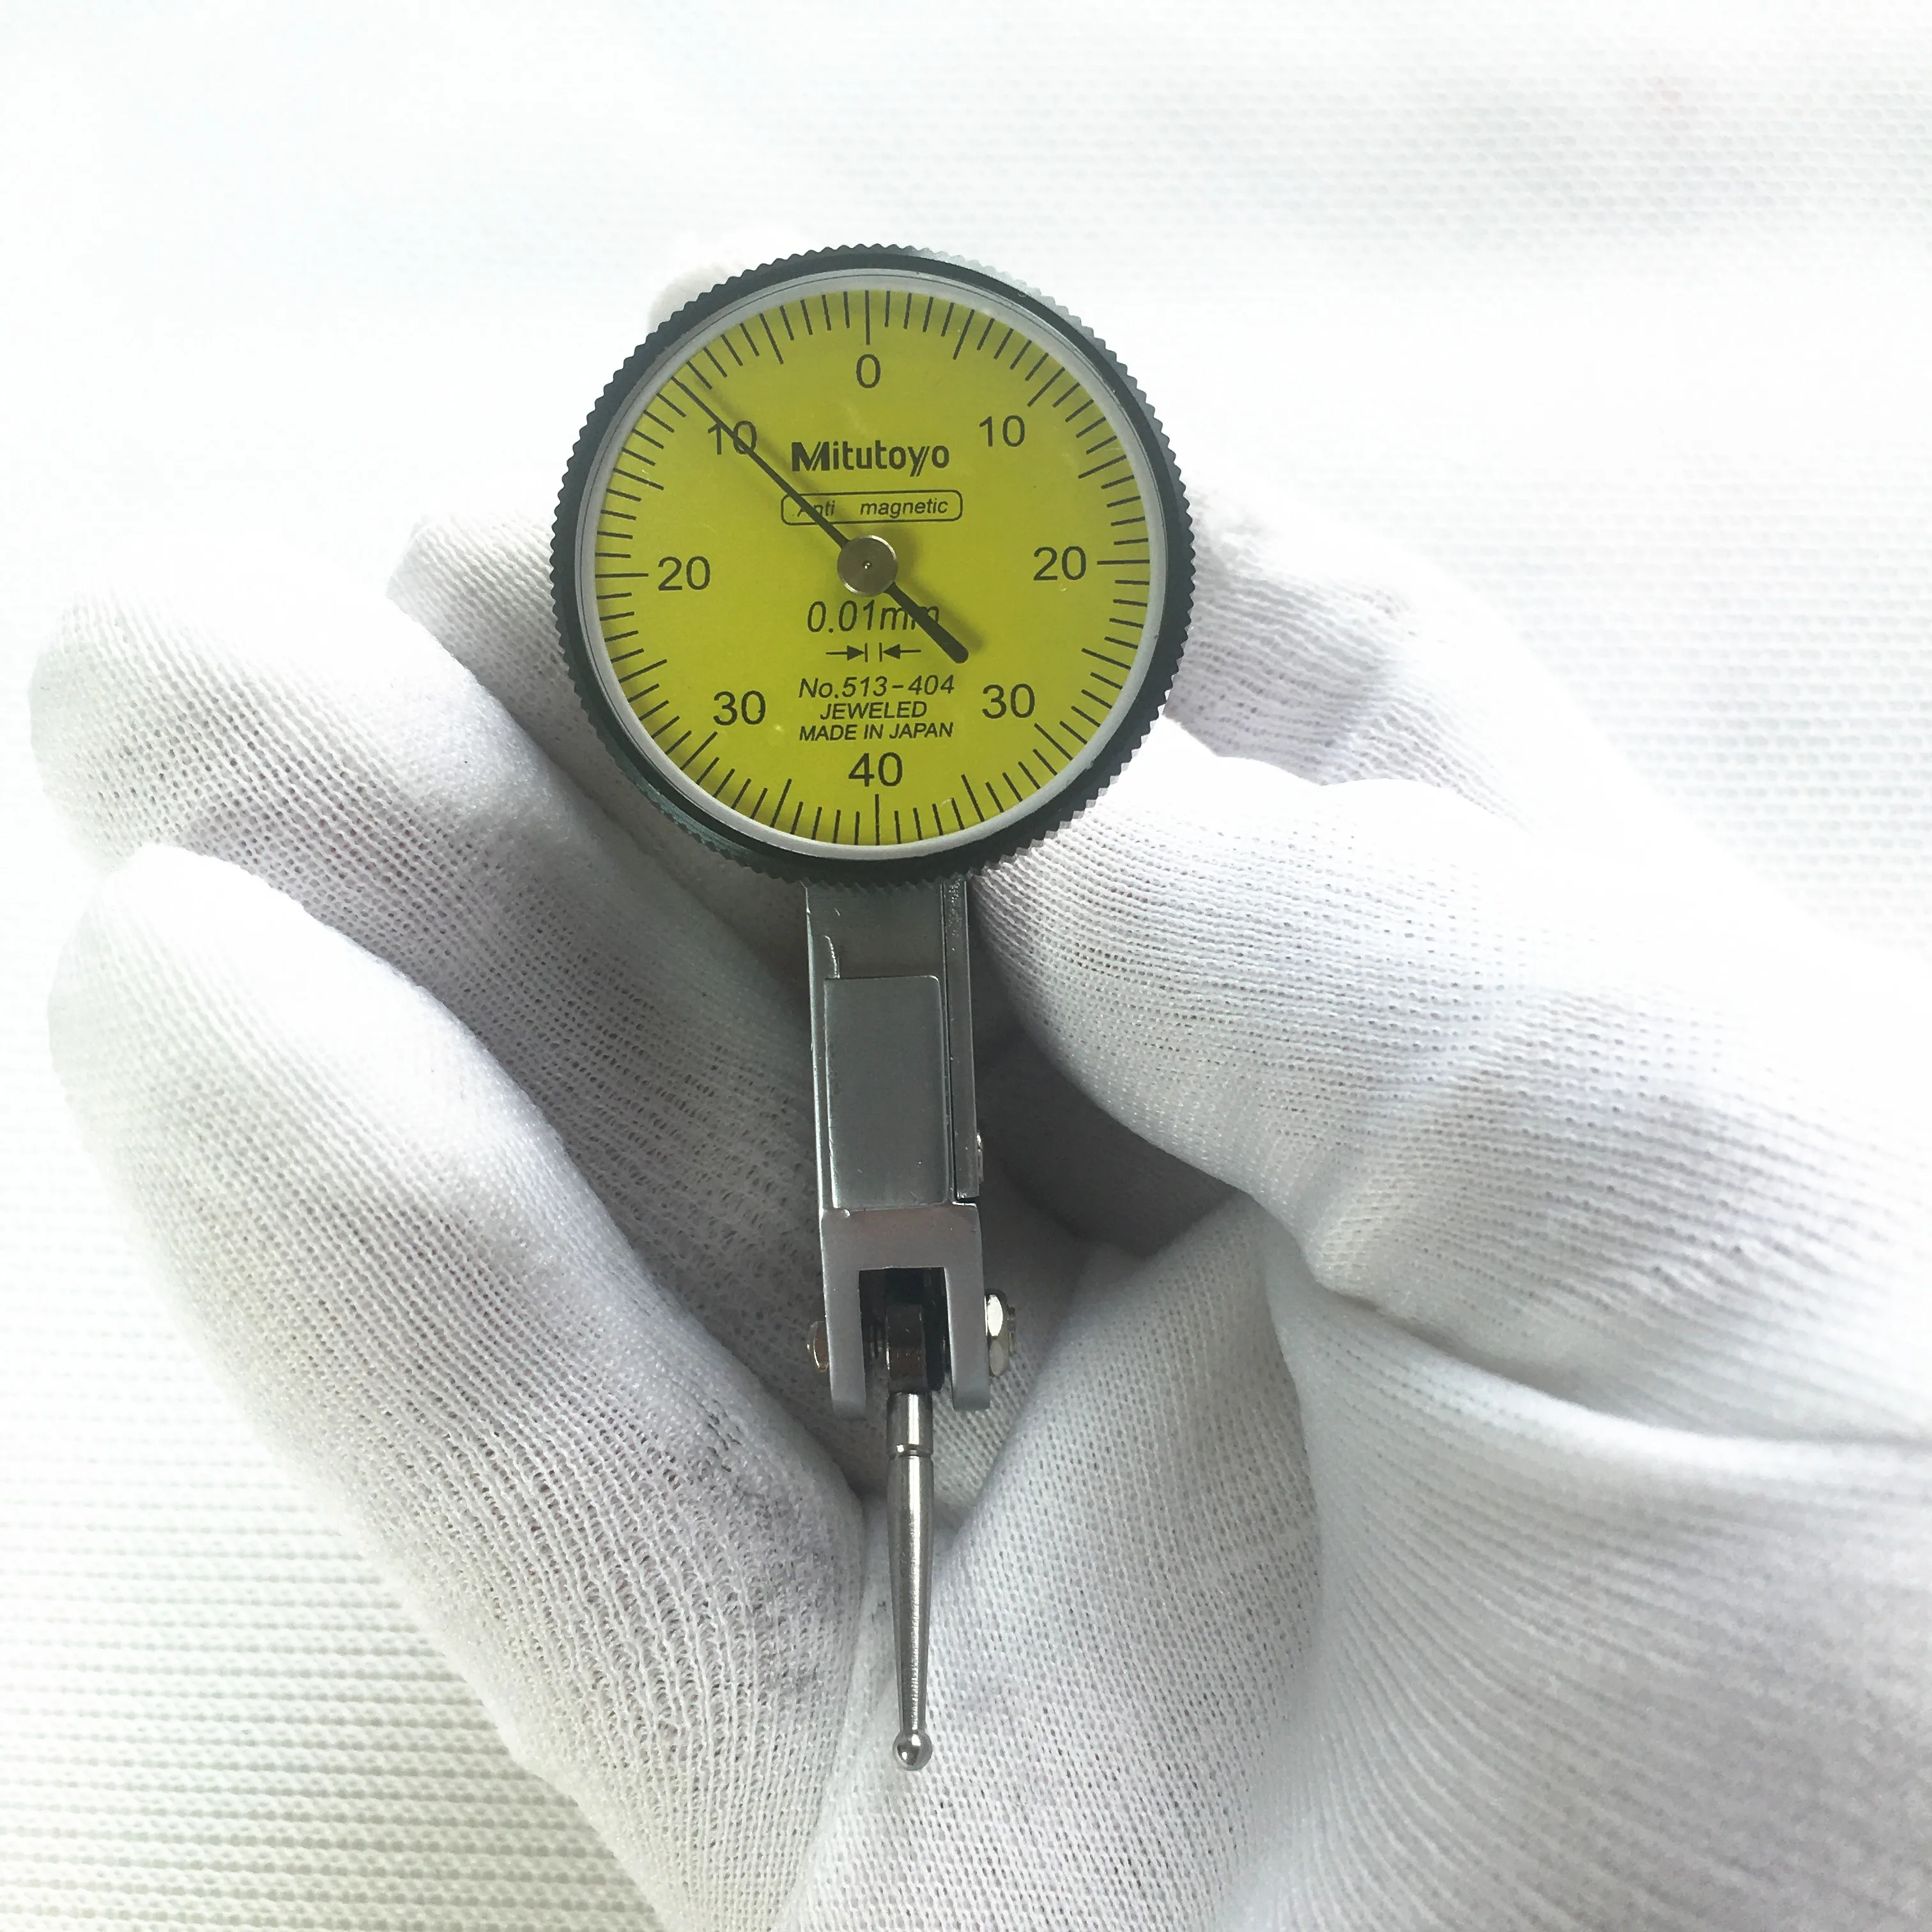 

Индикатор циферблата Mitutoyo № 404-0,01, измерительный инструмент с аналоговым циферблатом, диапазон измерений 0-0,8 мм, диаметр 32 мм